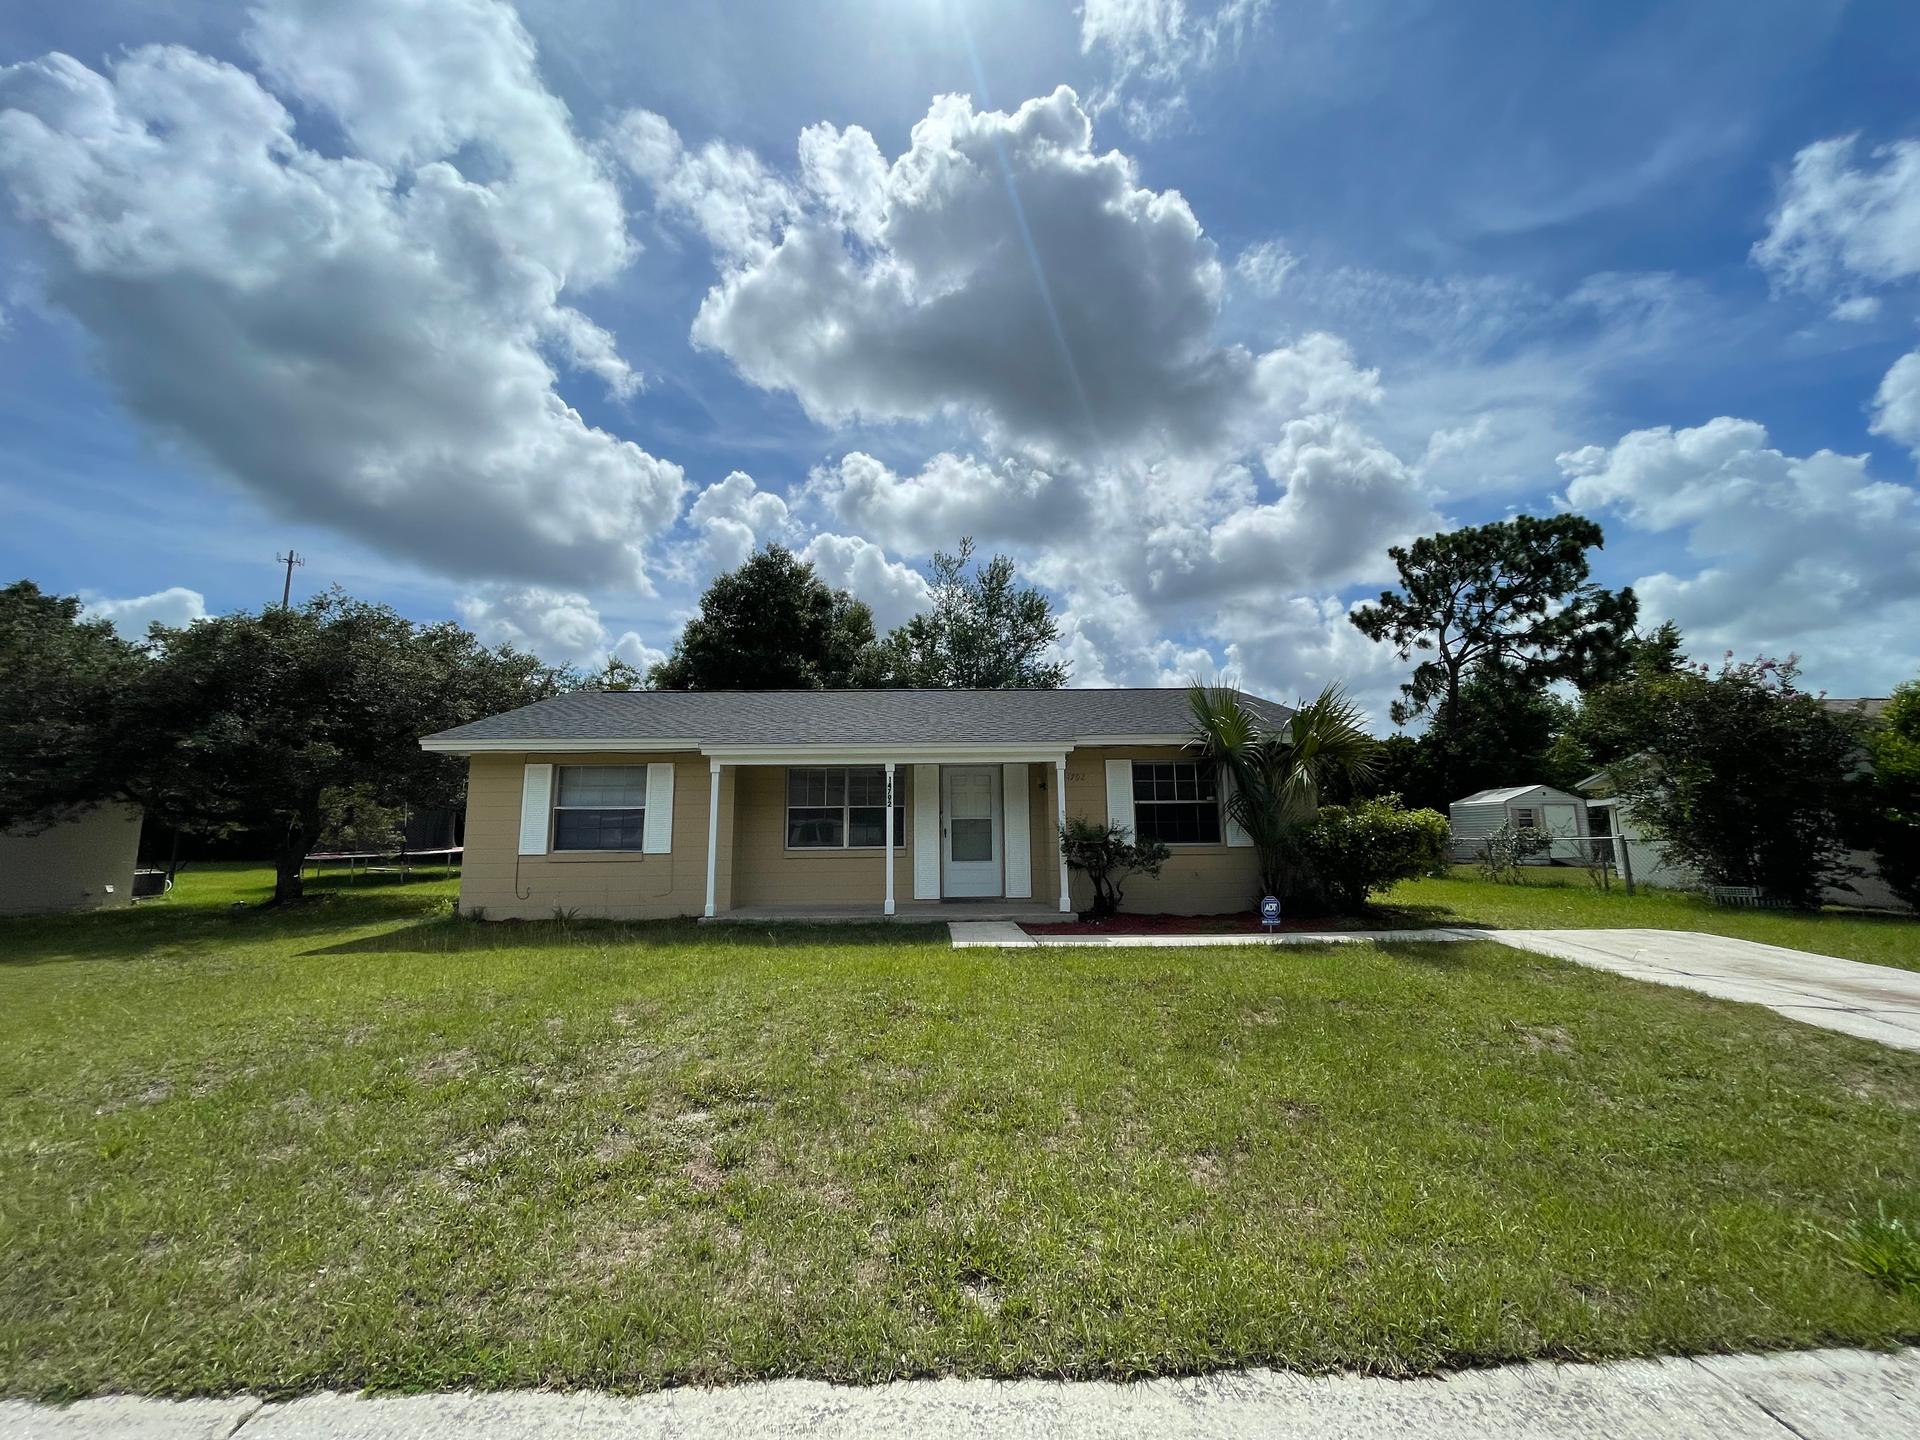 Photo of property: 14792 Southwest 39th Circle Ocala, FL 34473